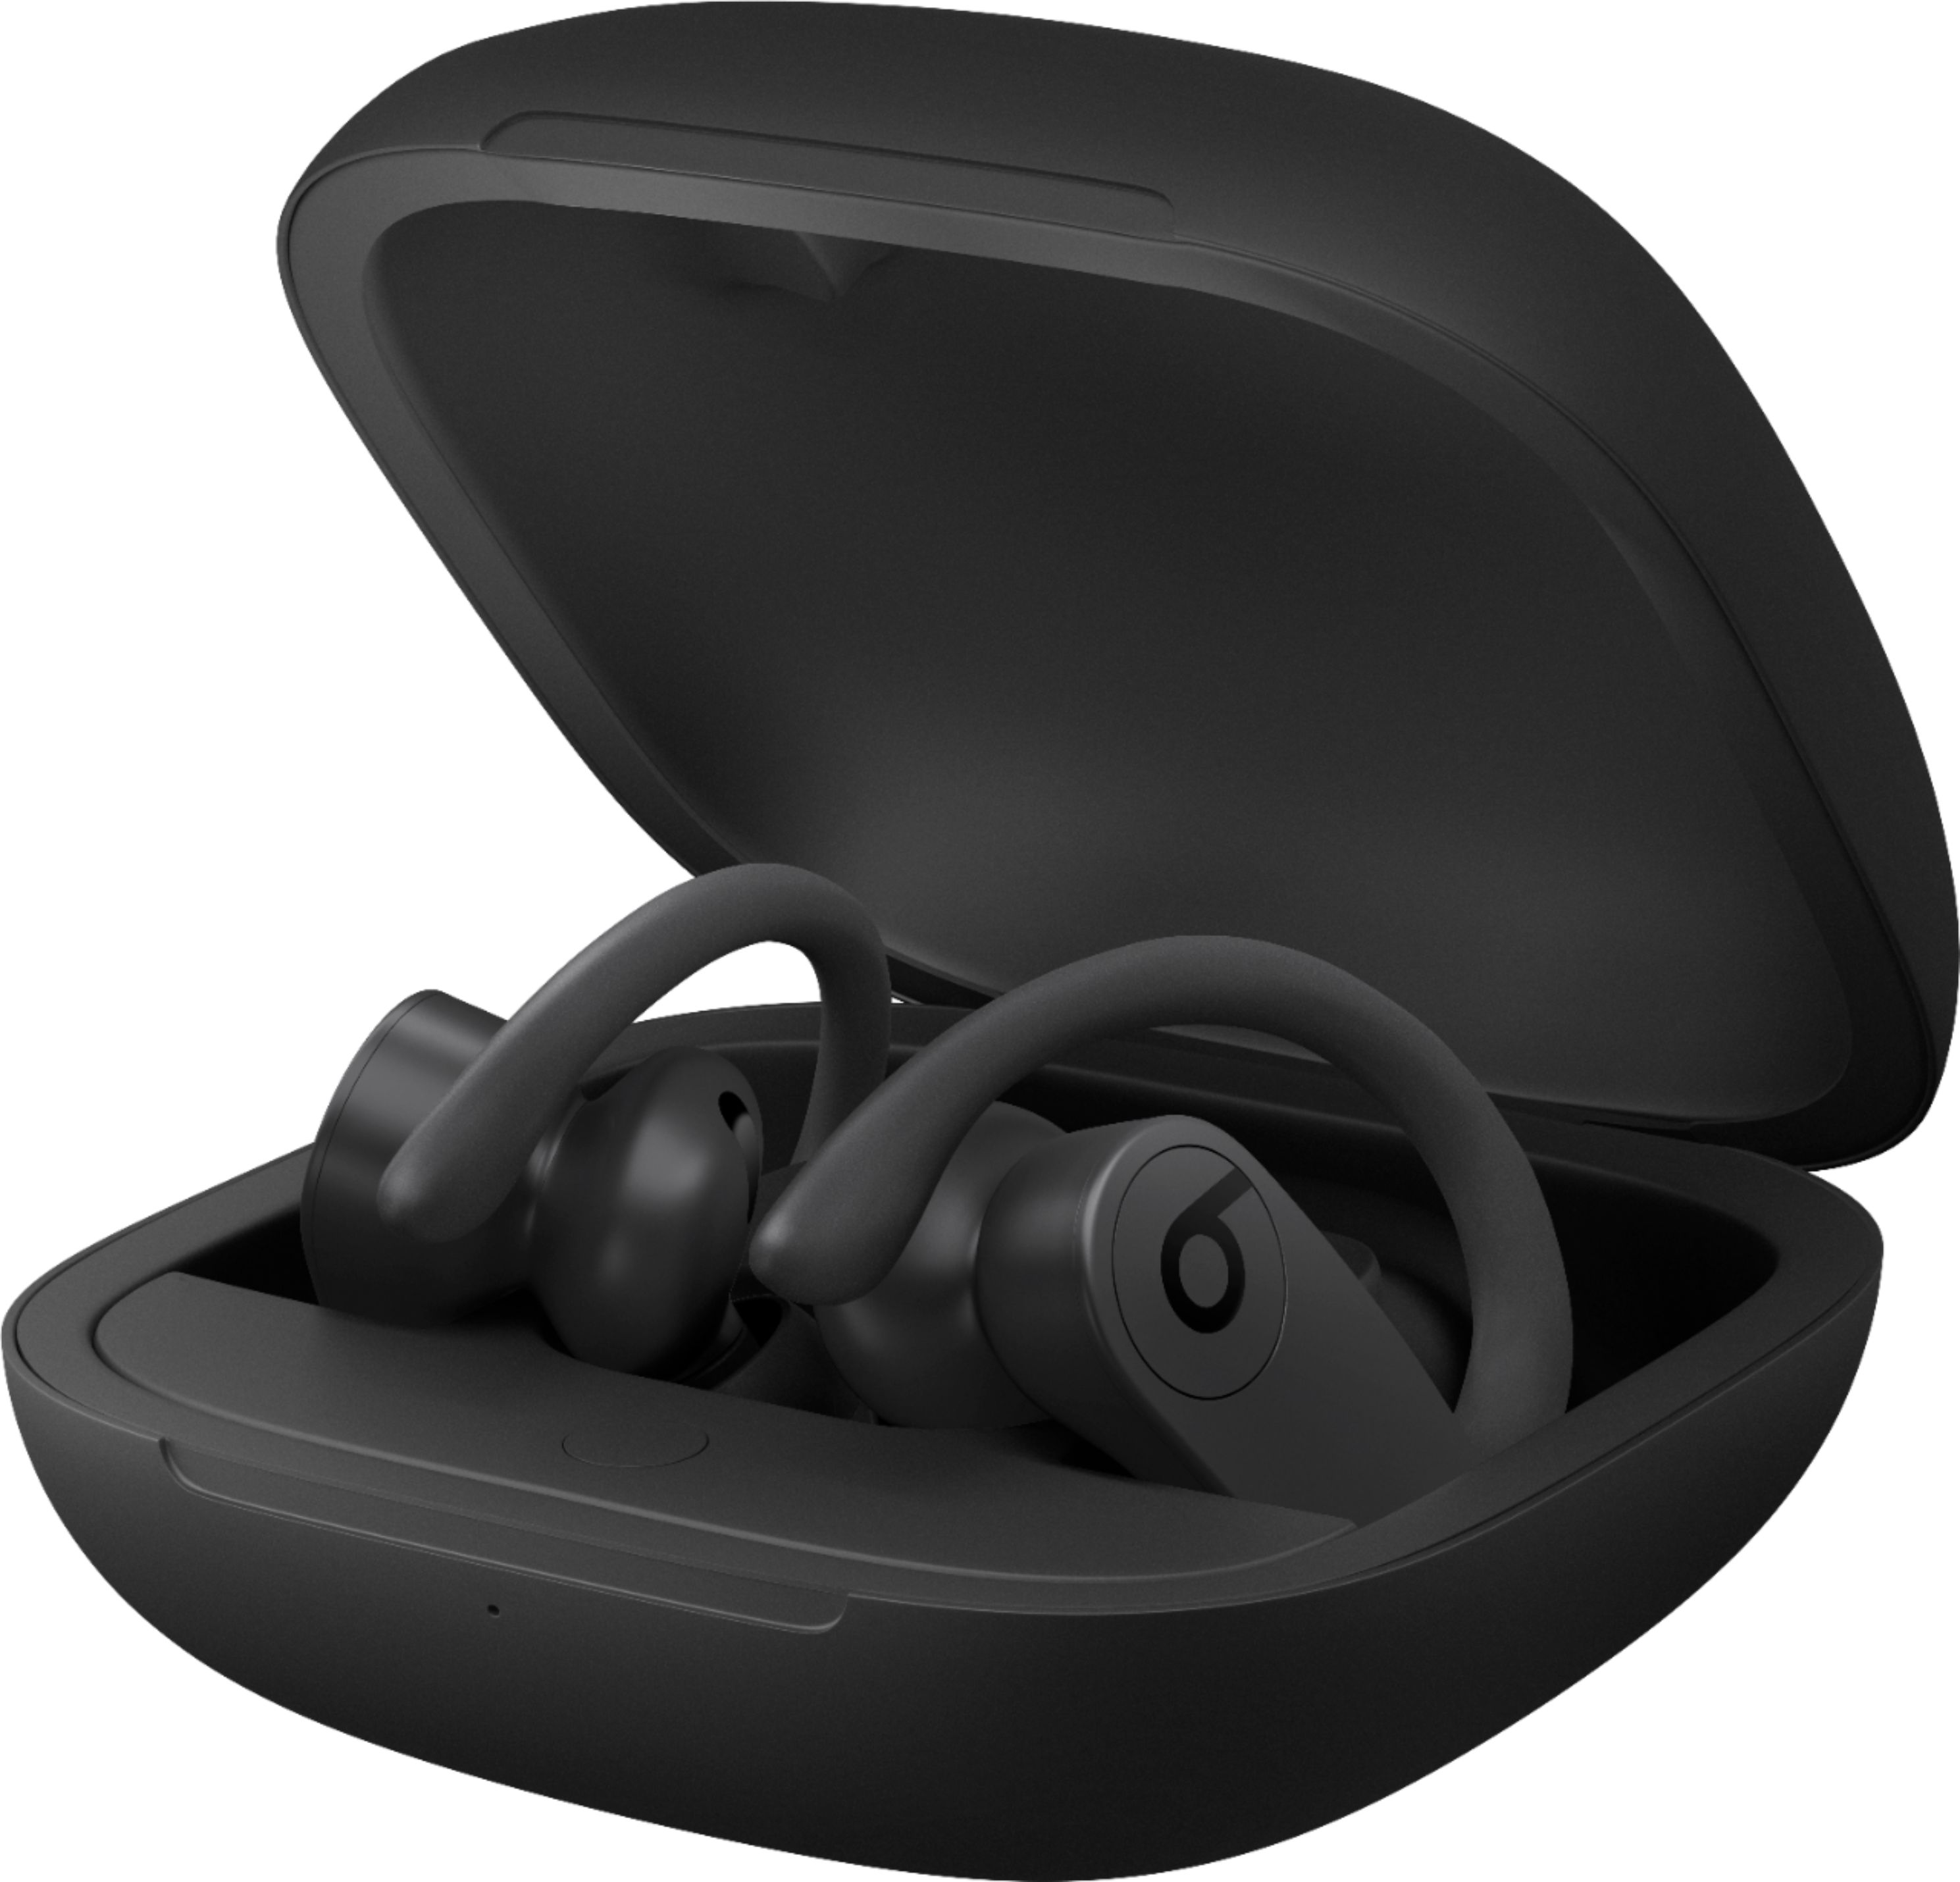 Beats by Dr. Dre Powerbeats Pro Totally Wireless Earbuds Black MV6Y2LL/A -  Best Buy